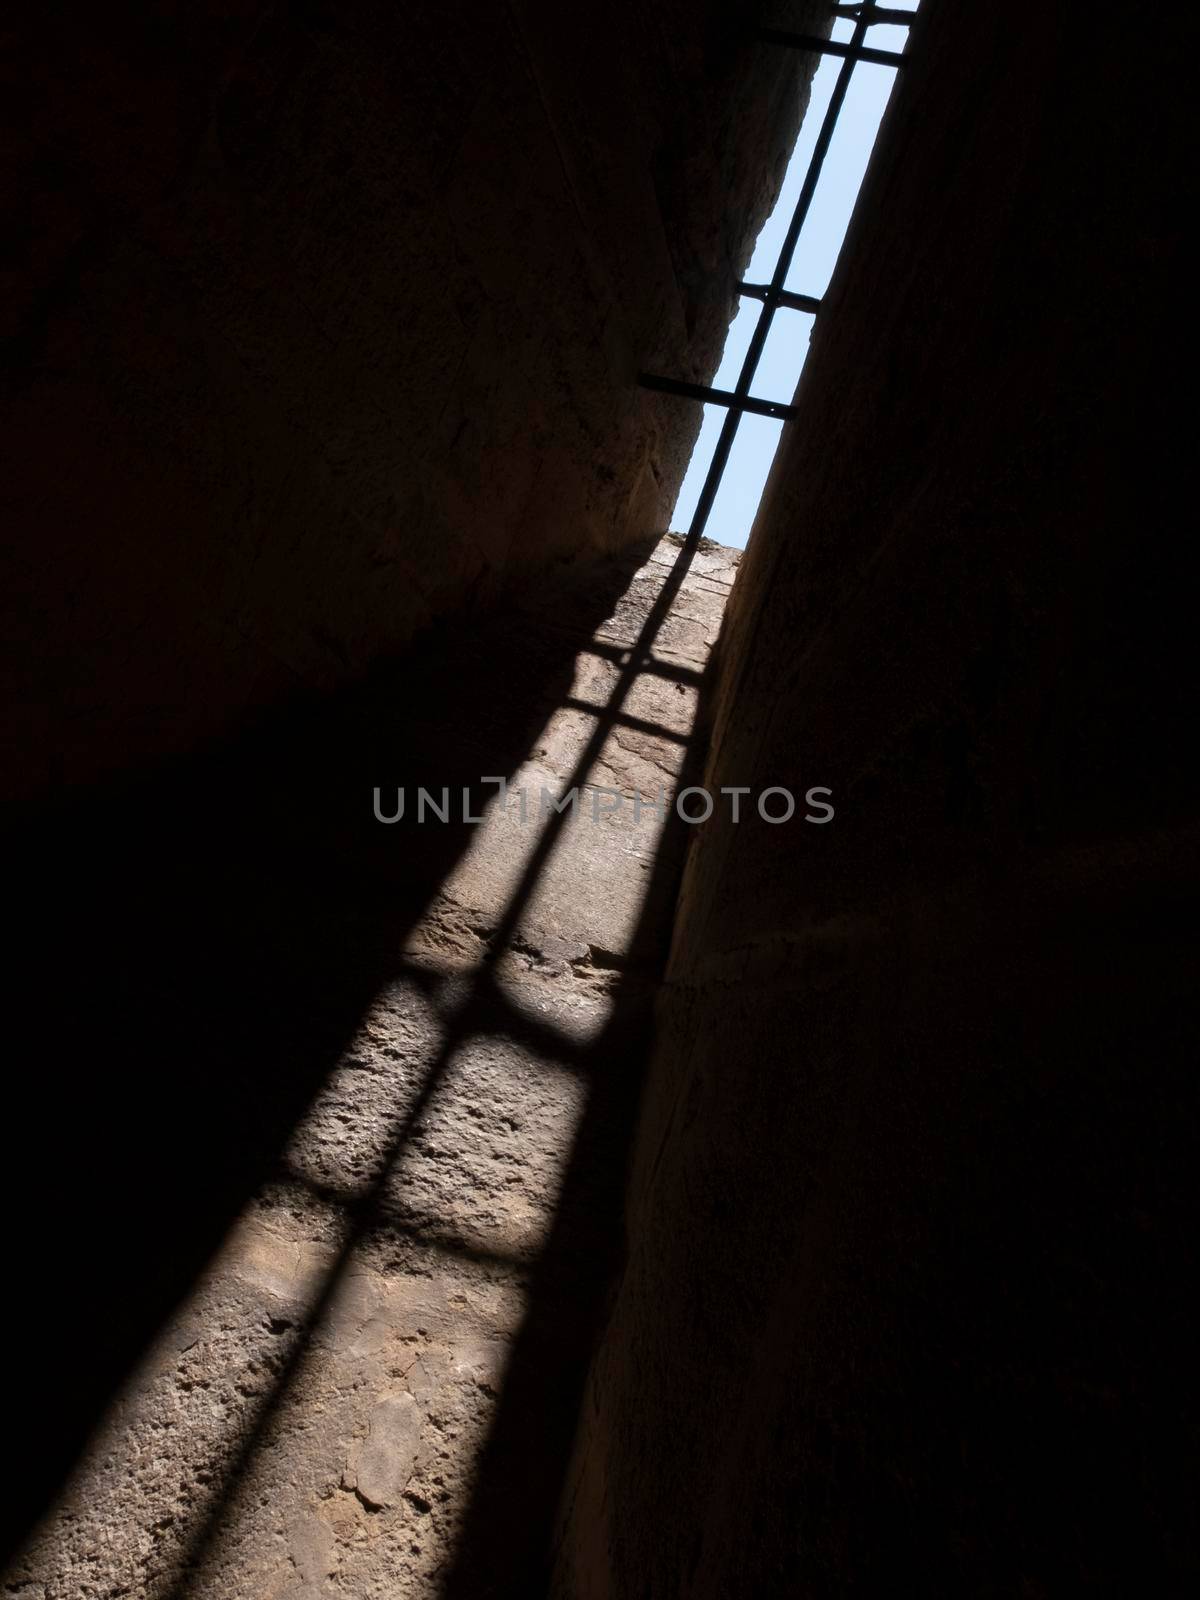 A Shadow in an old window castle by raferto1973